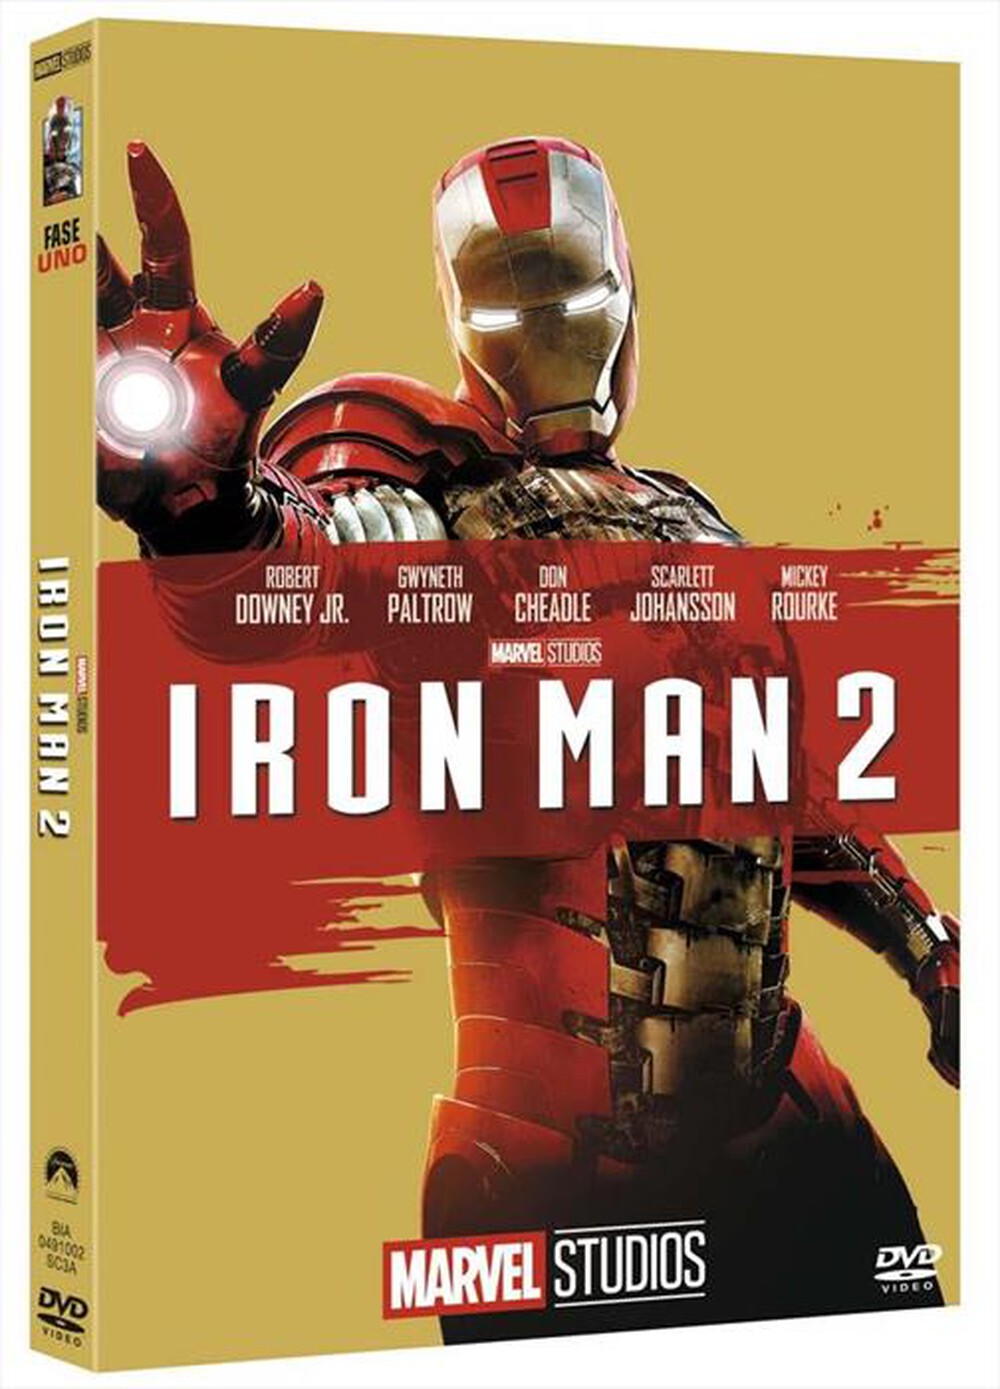 "EAGLE PICTURES - Iron Man 2 (Edizione Marvel Studios 10 Anniversa"